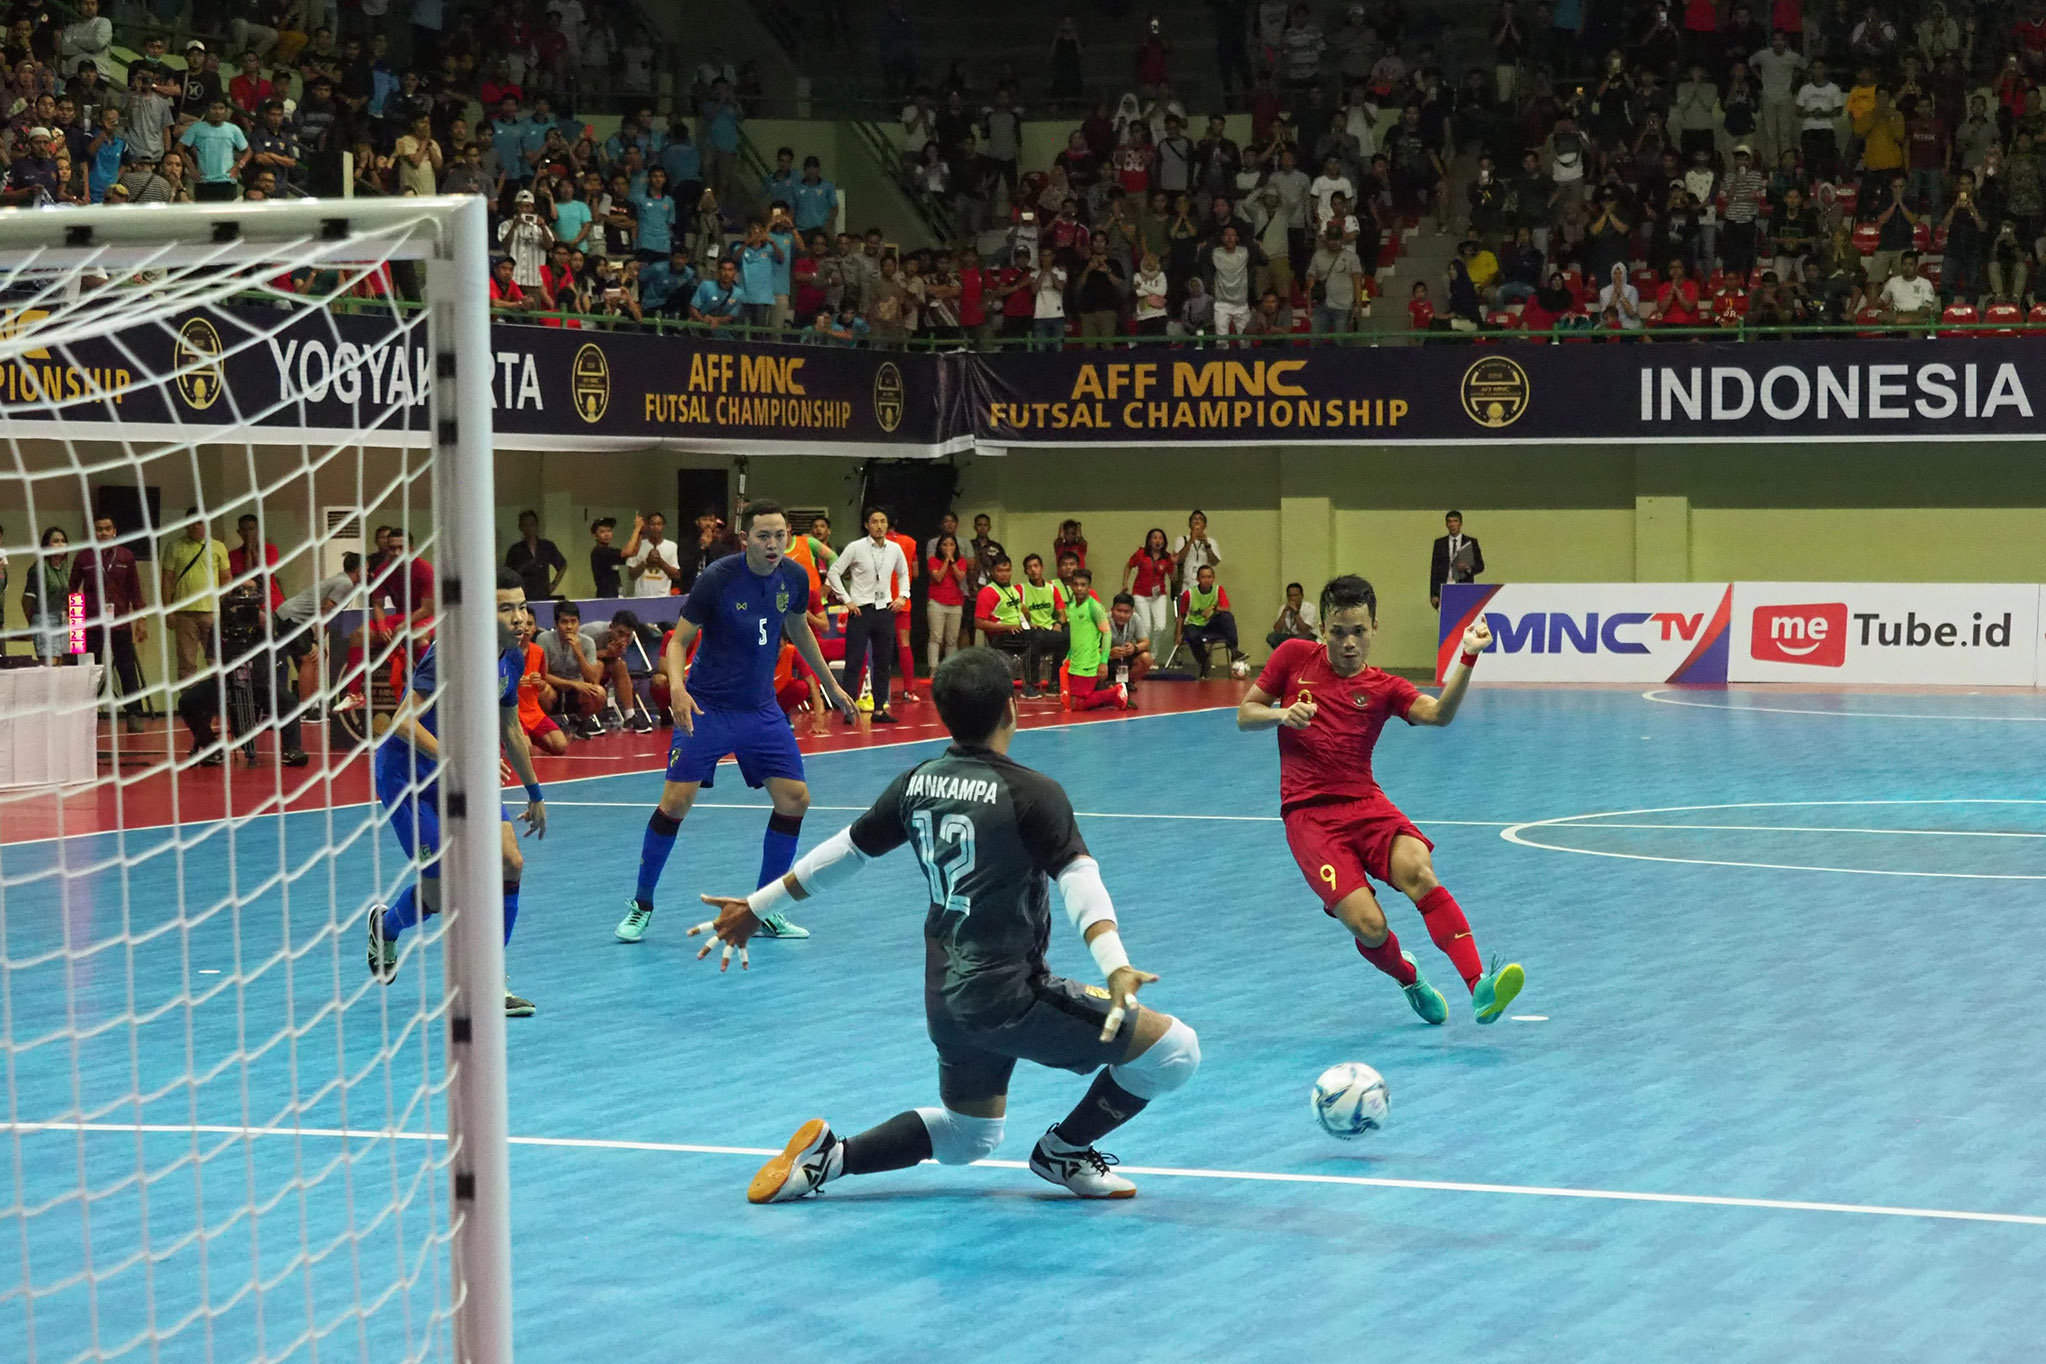 Sejarah Futsal Pertama Kali Dimainkan di Dunia